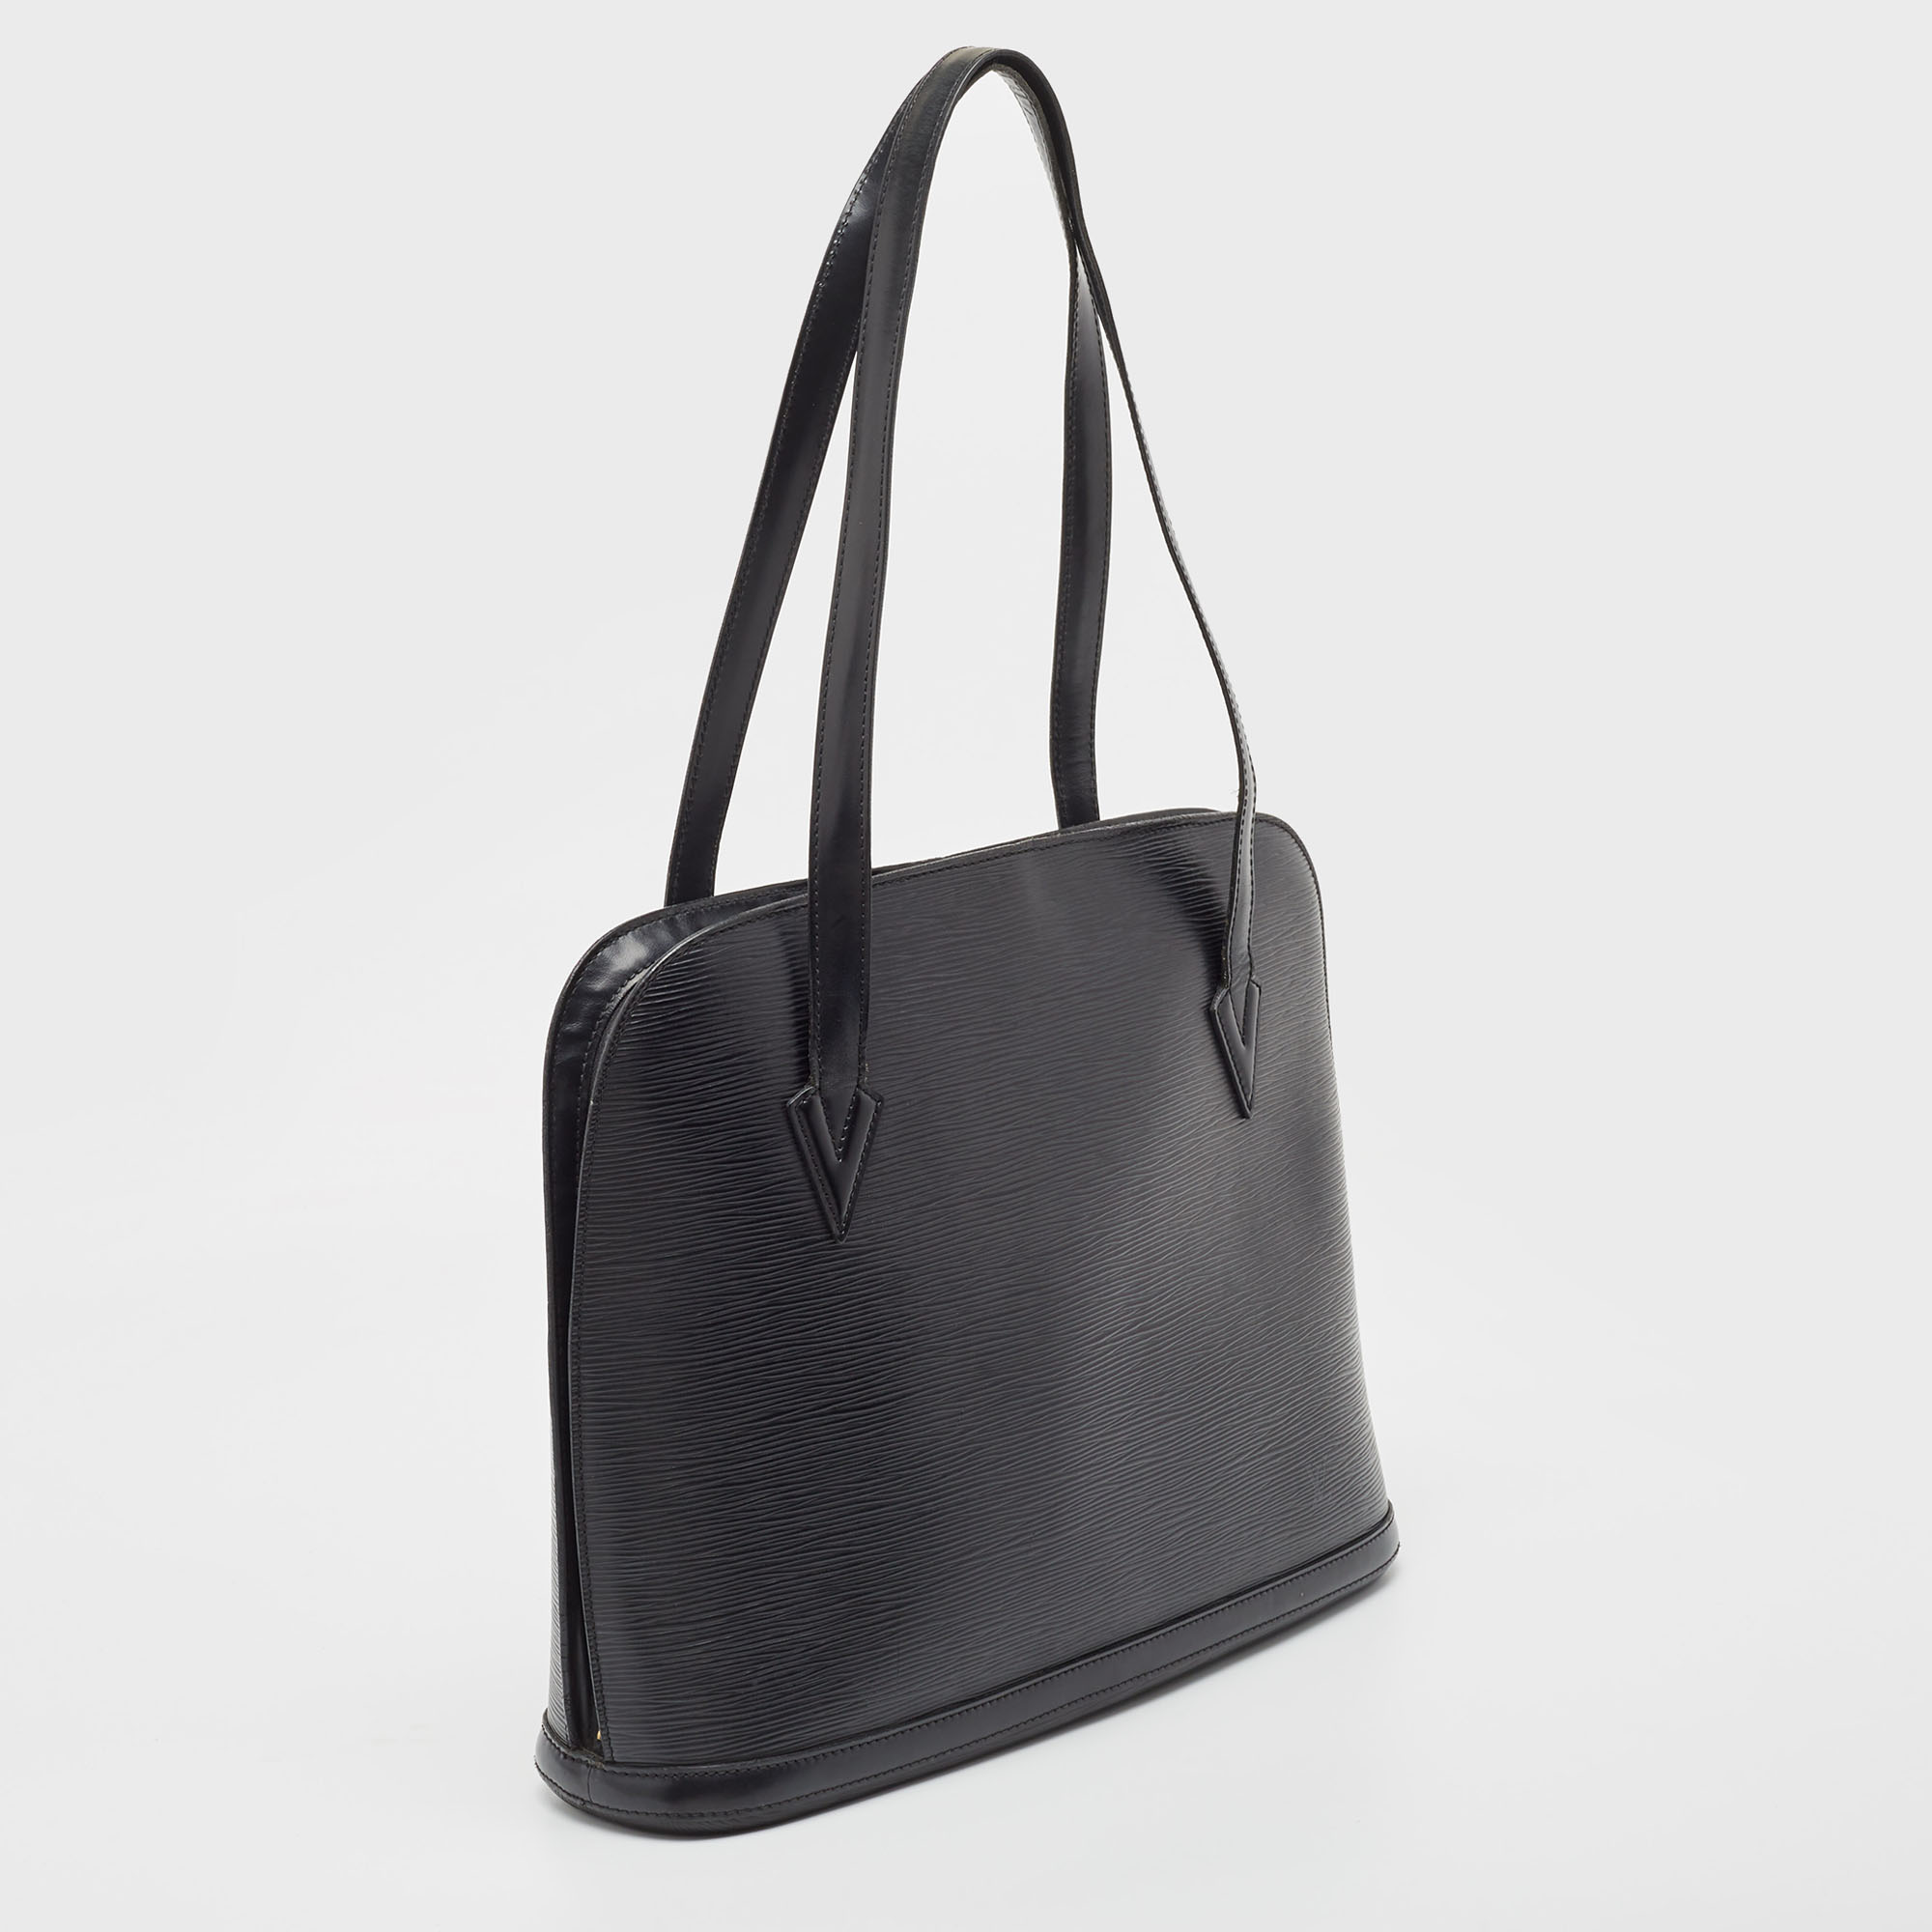 Louis Vuitton Black Epi Leather Lussac Bag